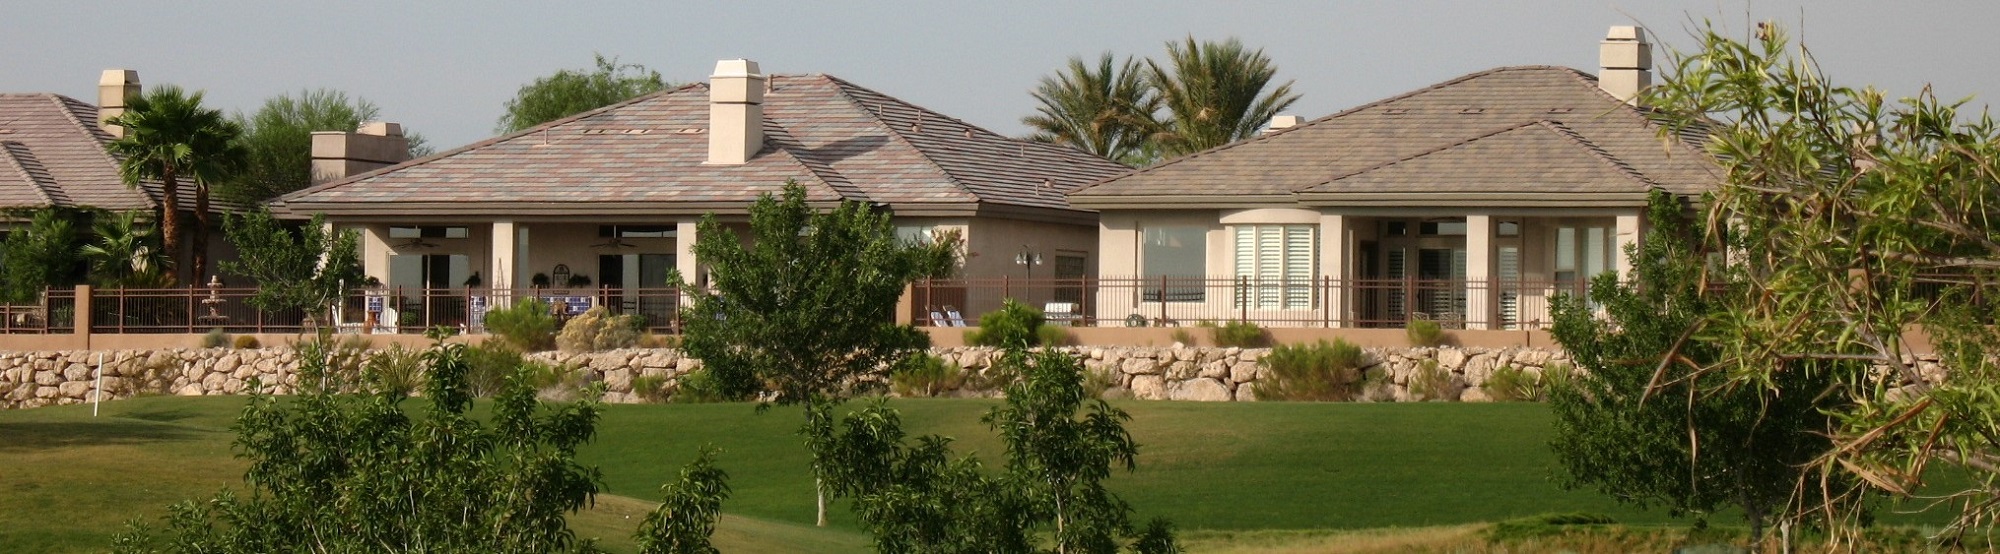 Homes facing Canyon golf course